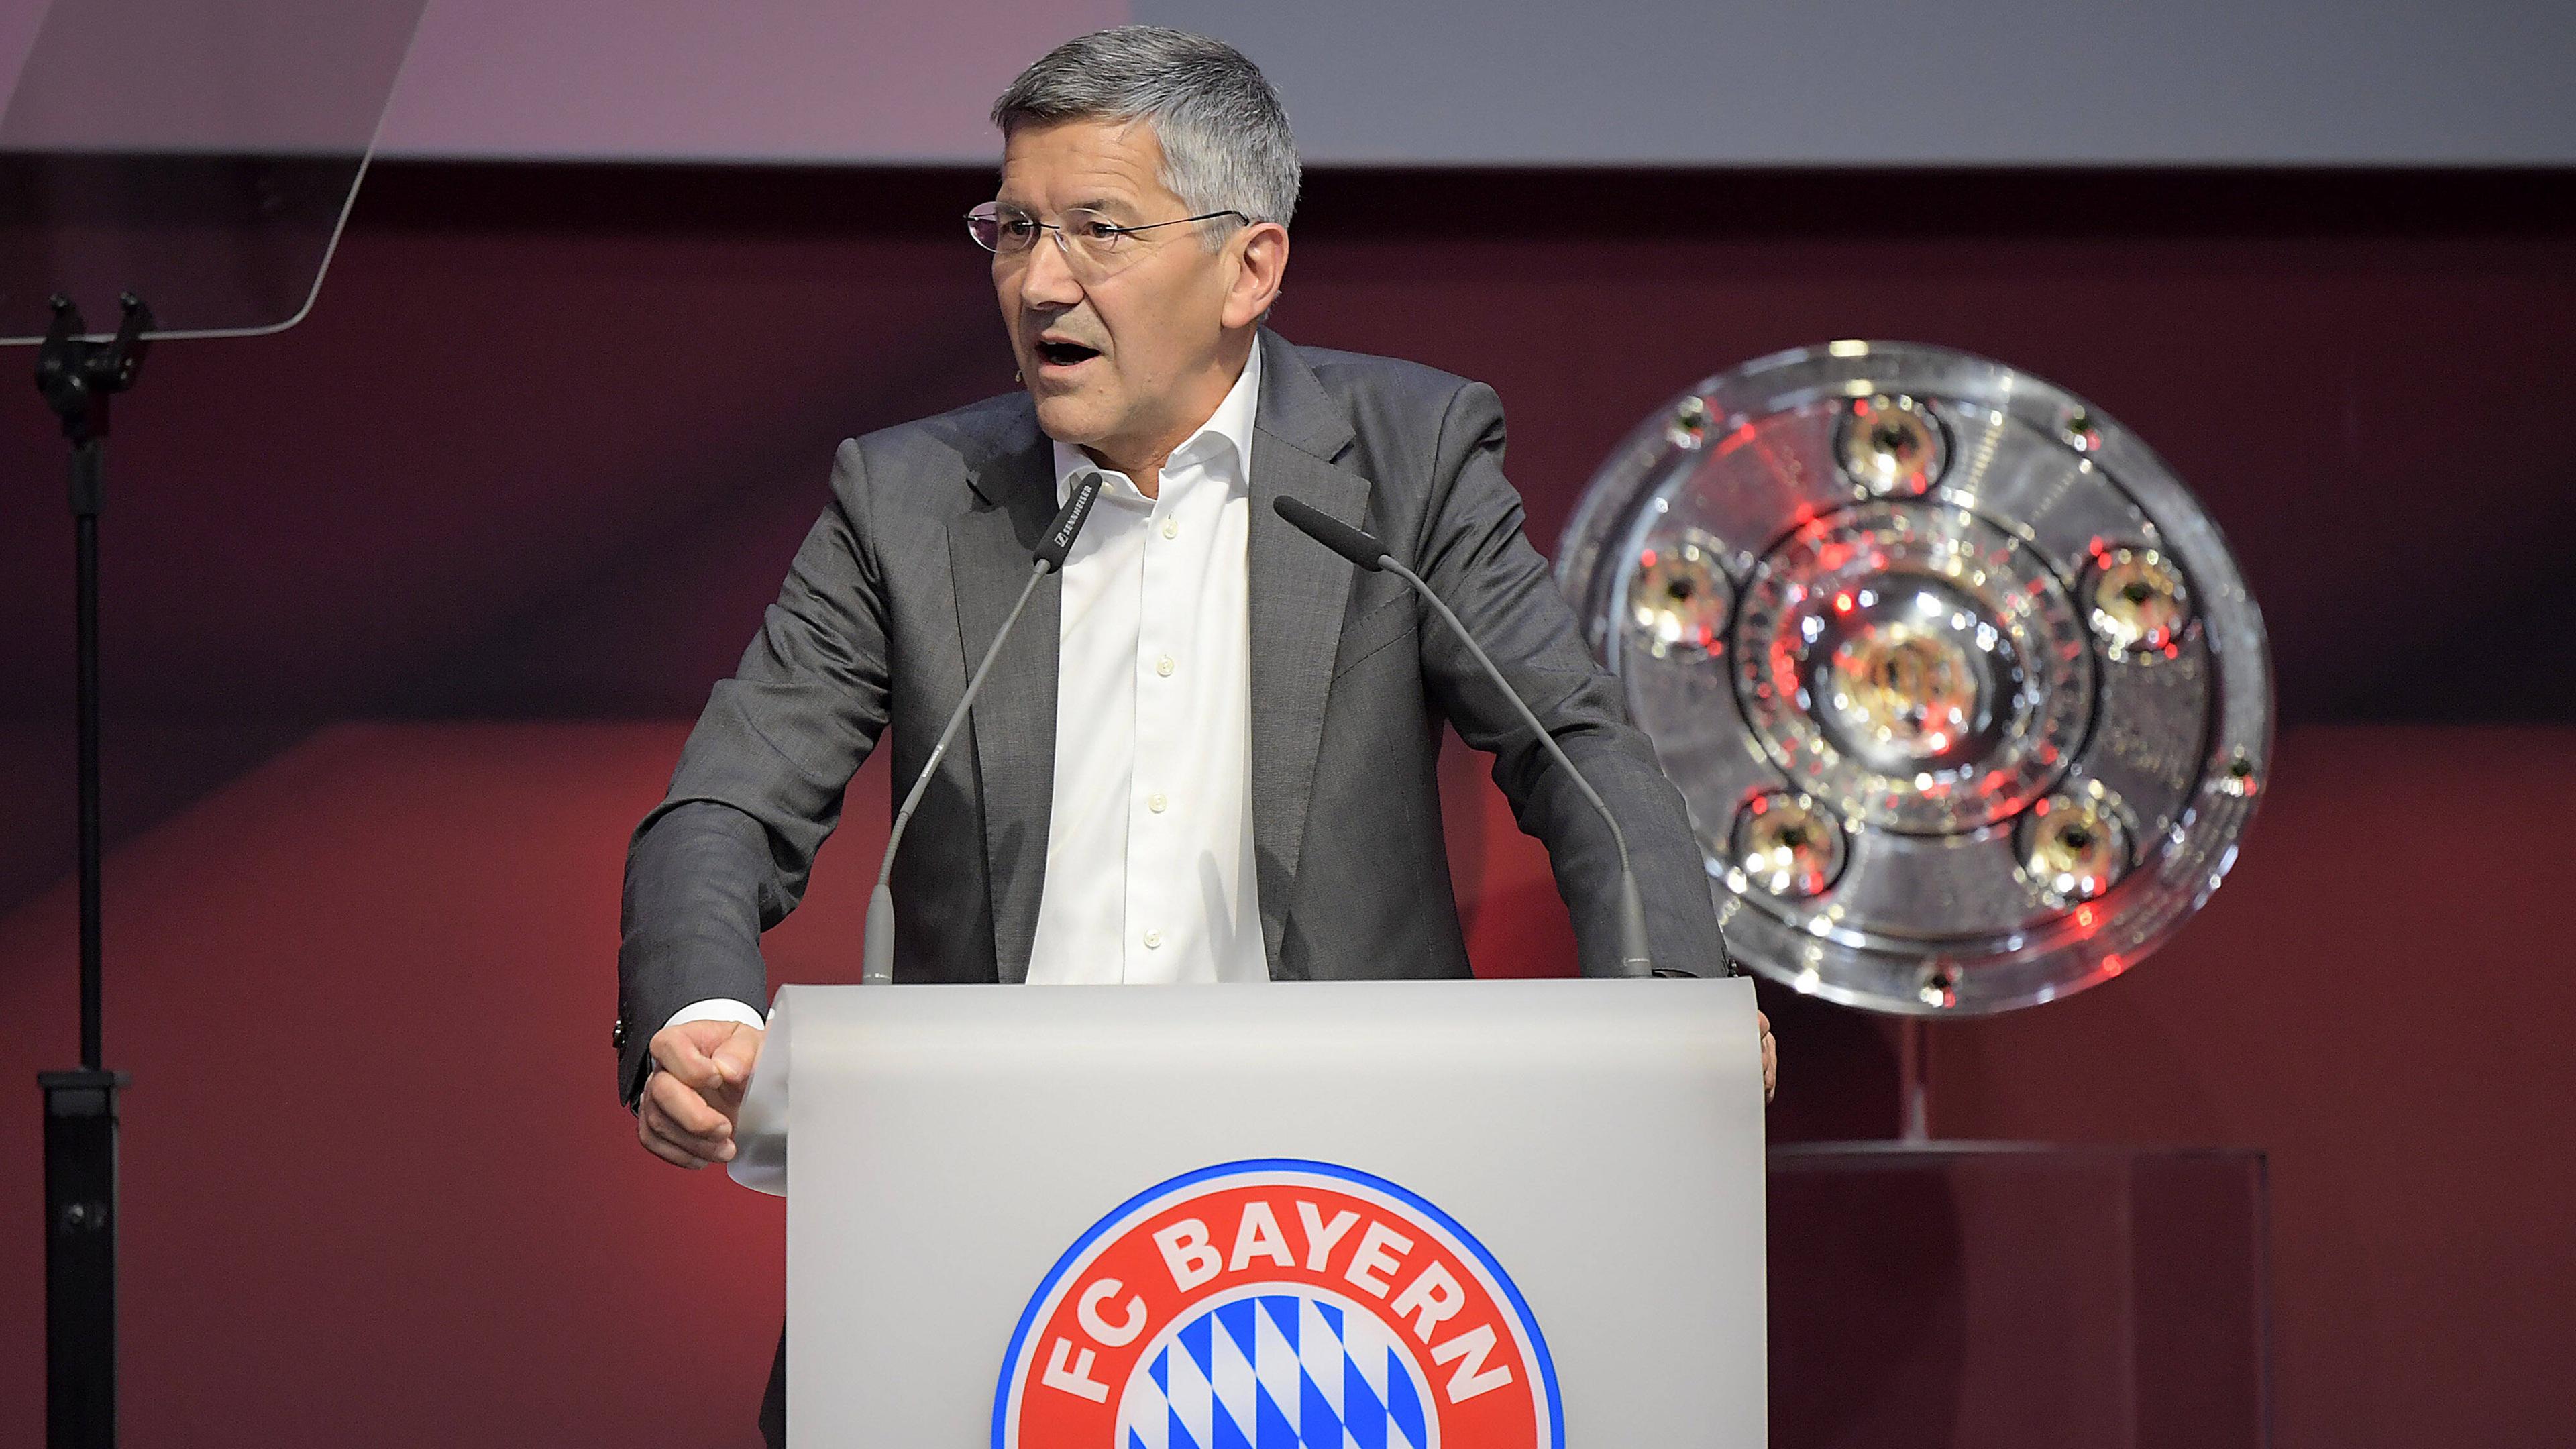 15.10.2022,  1. Bundesliga, FC Bayern München, Präsident  Herbert Hainer bei der Jahreshauptversammlung 2022 des FC Bayern München